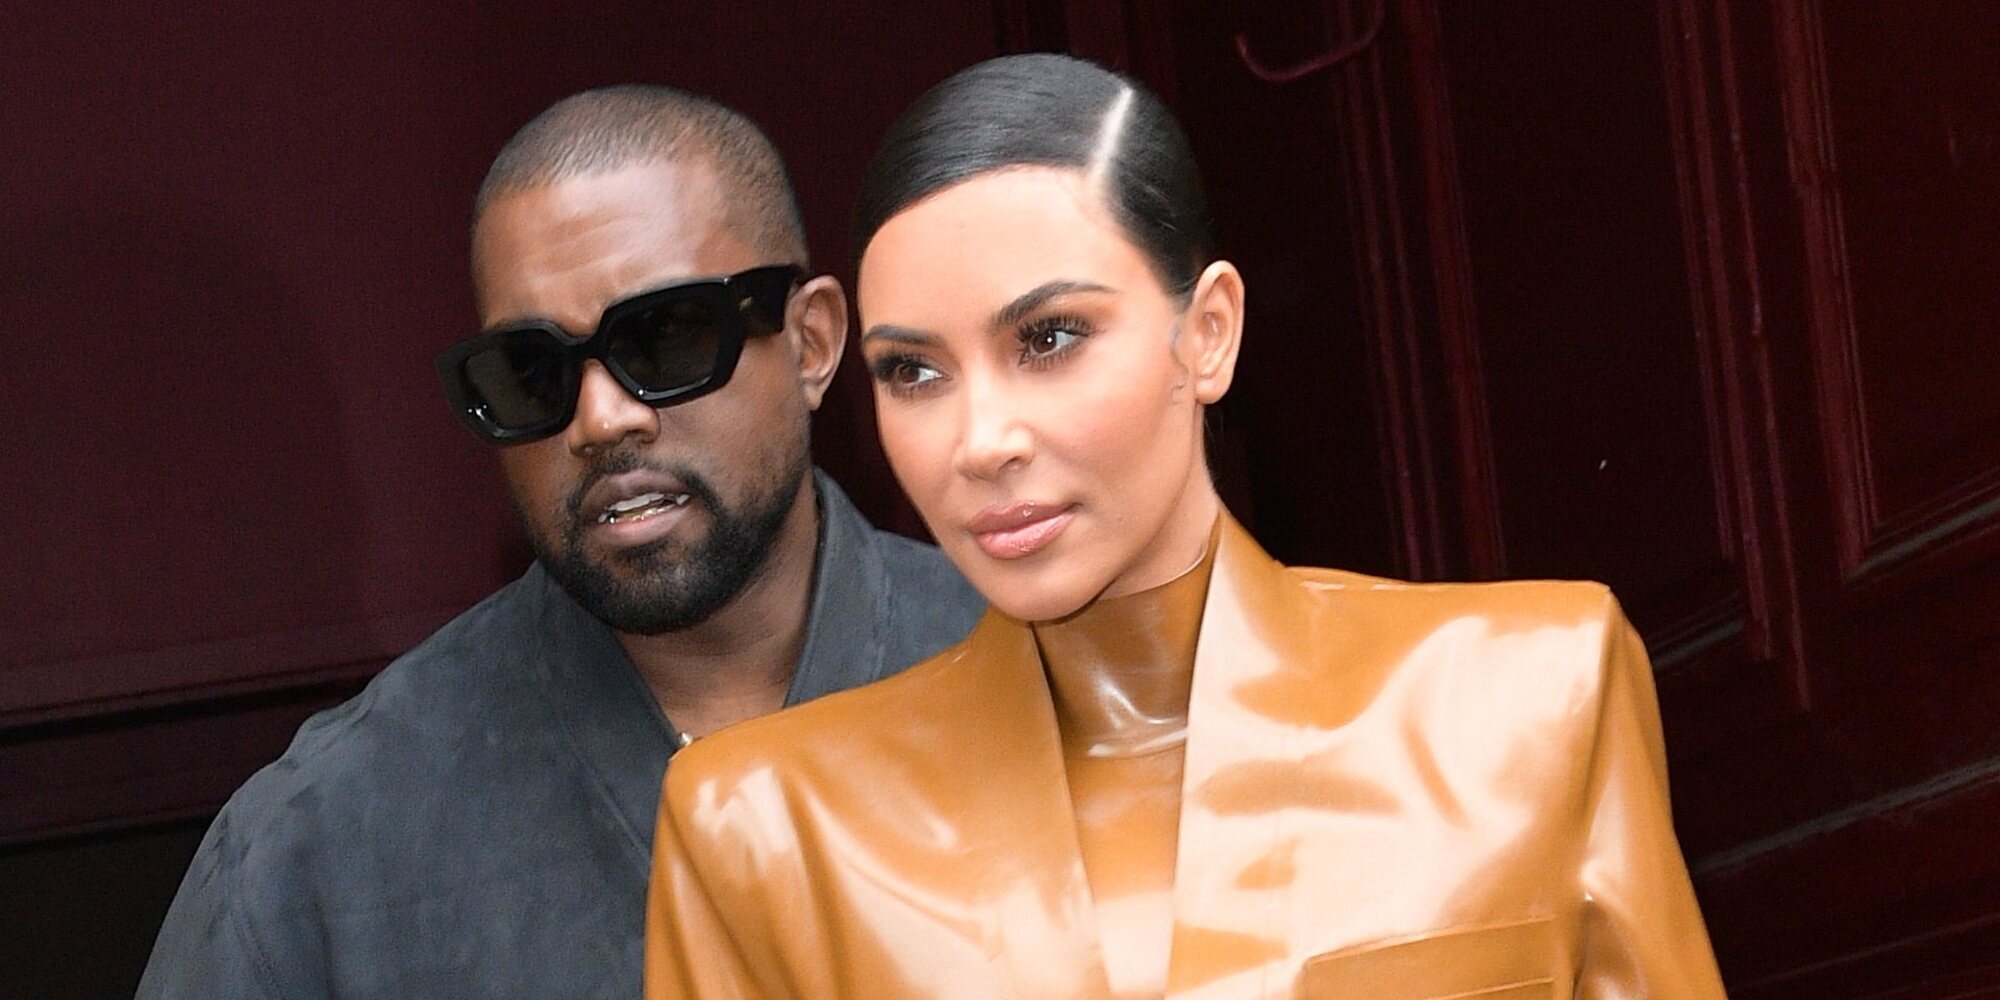 Kanye West sigue con su acoso a Kim Kardashian también ante los tribunales para impedir que sea 'soltera'